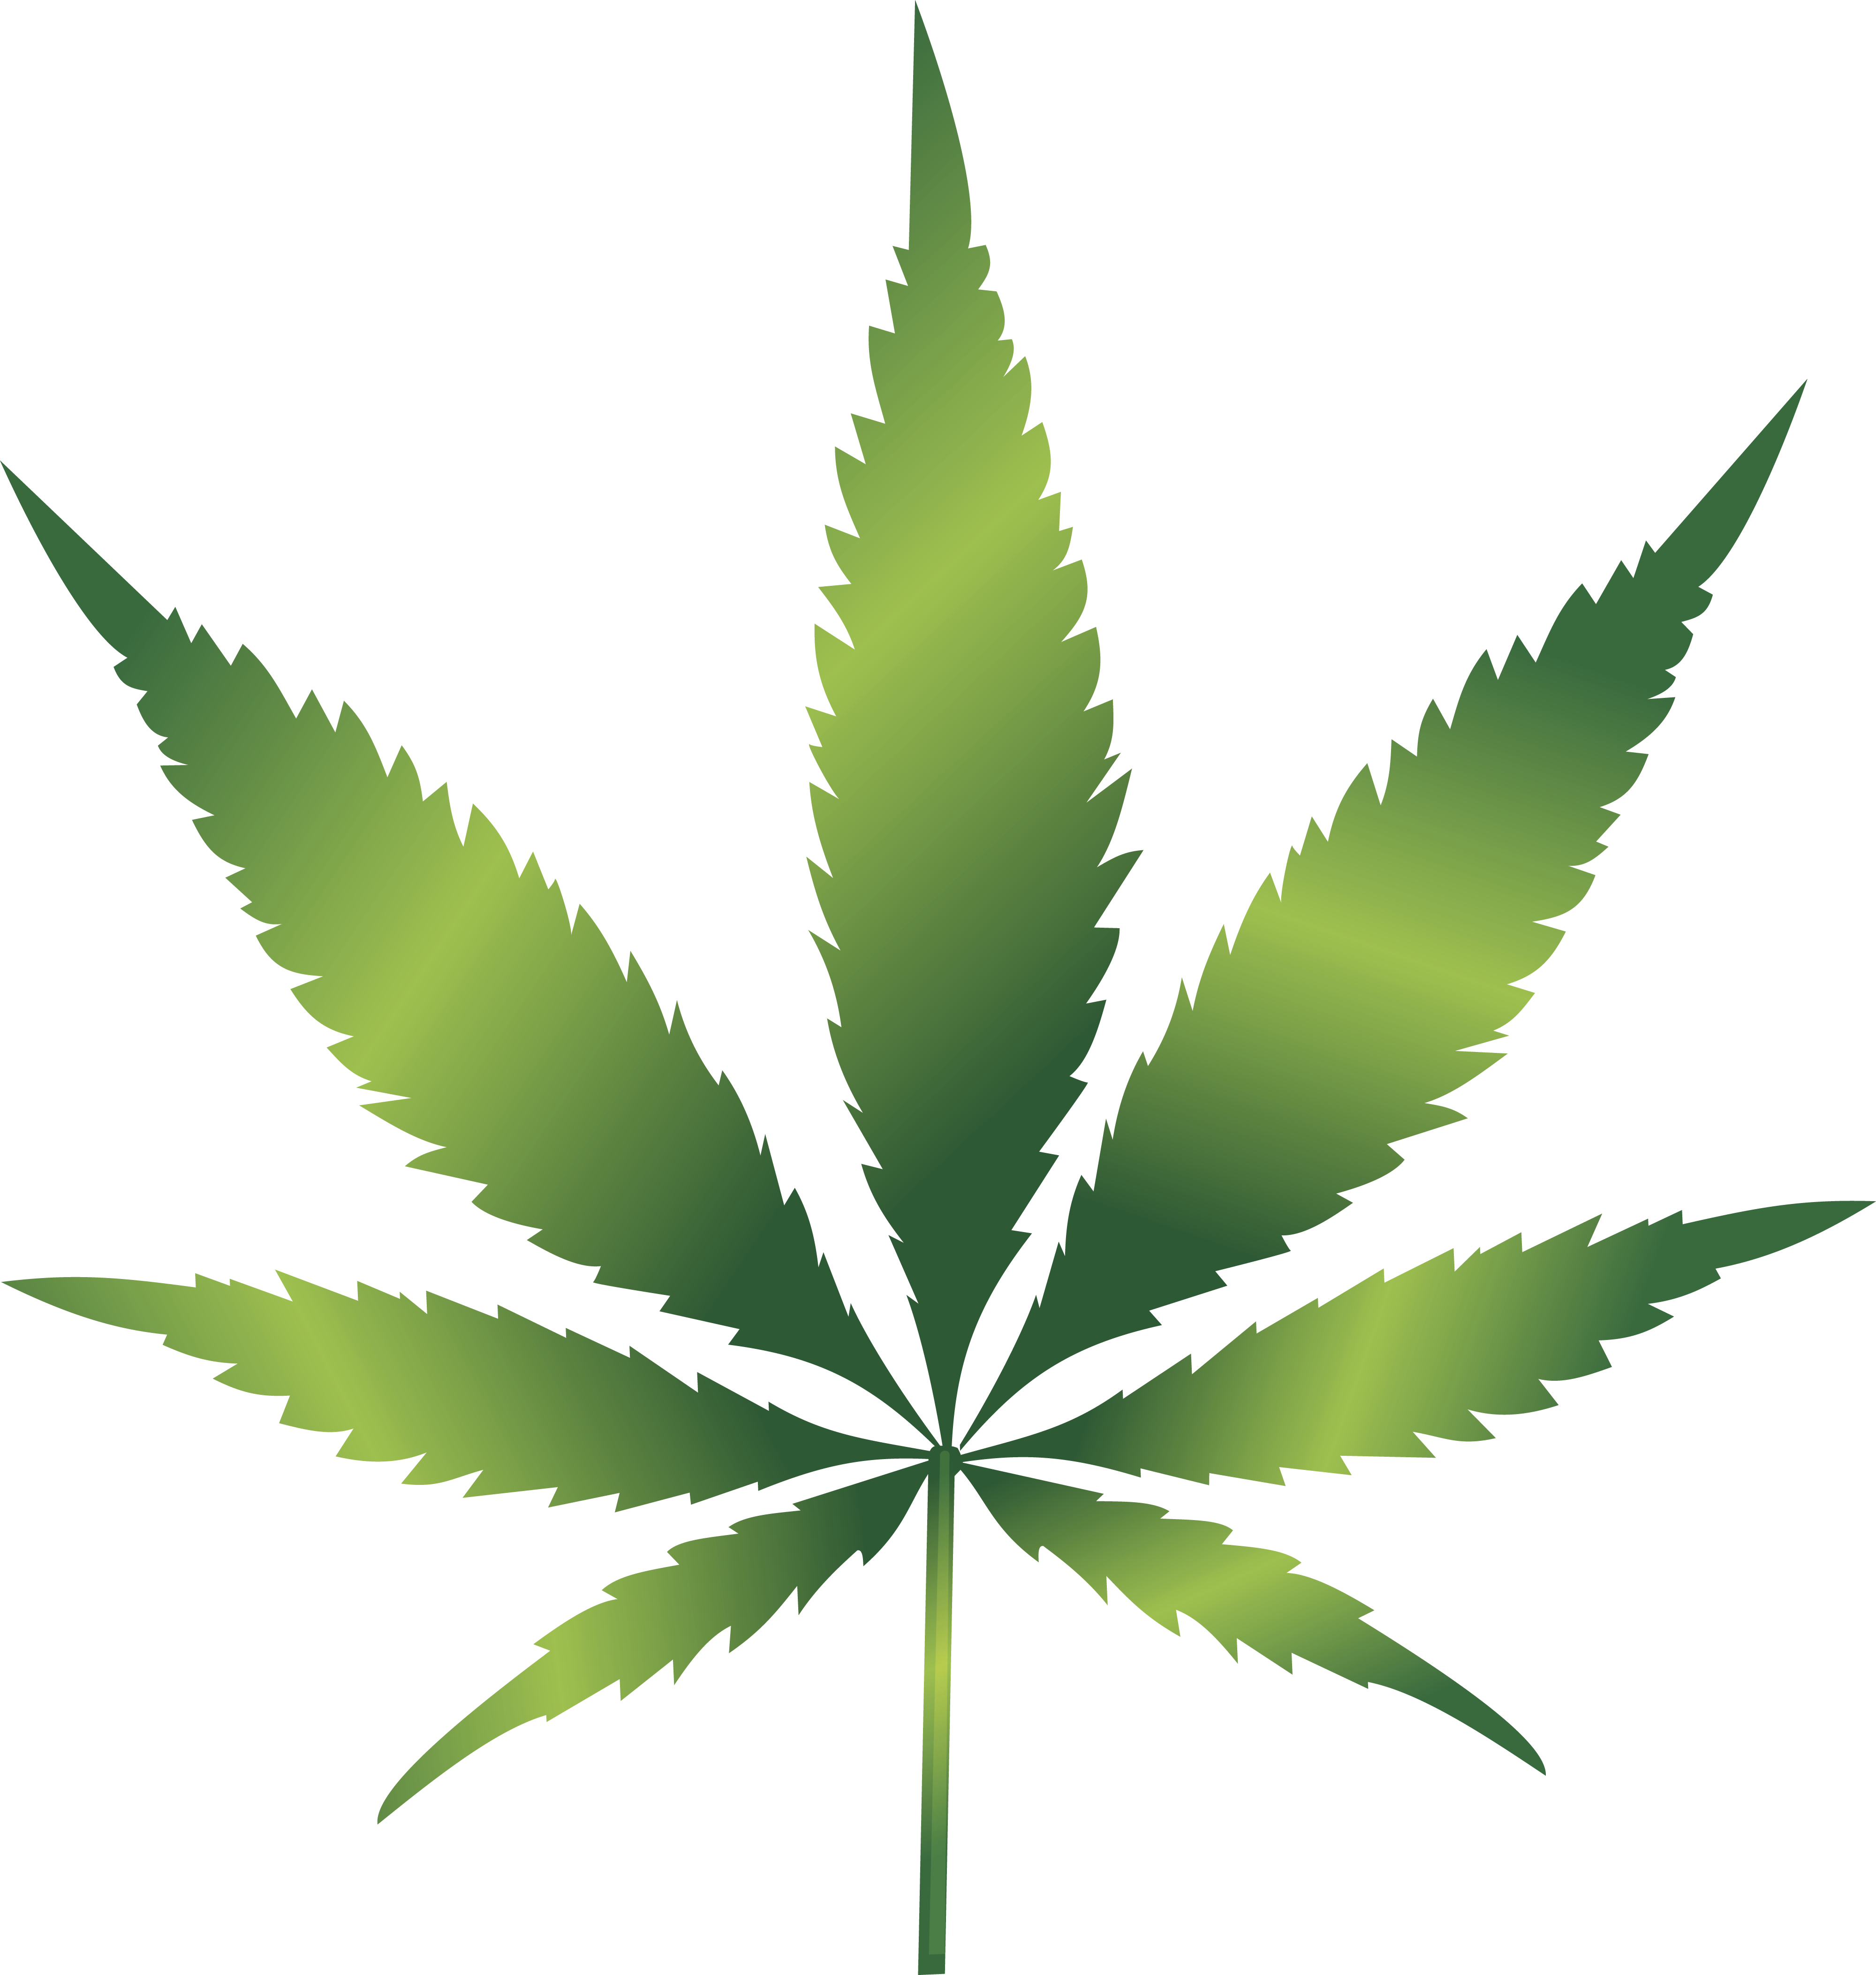 Weed Leaf Transparent Png Cannabis Leaves Black Weed Leaf Clipart Free Transparent Png Logos Search more hd transparent pot leaf image on kindpng. free png logos